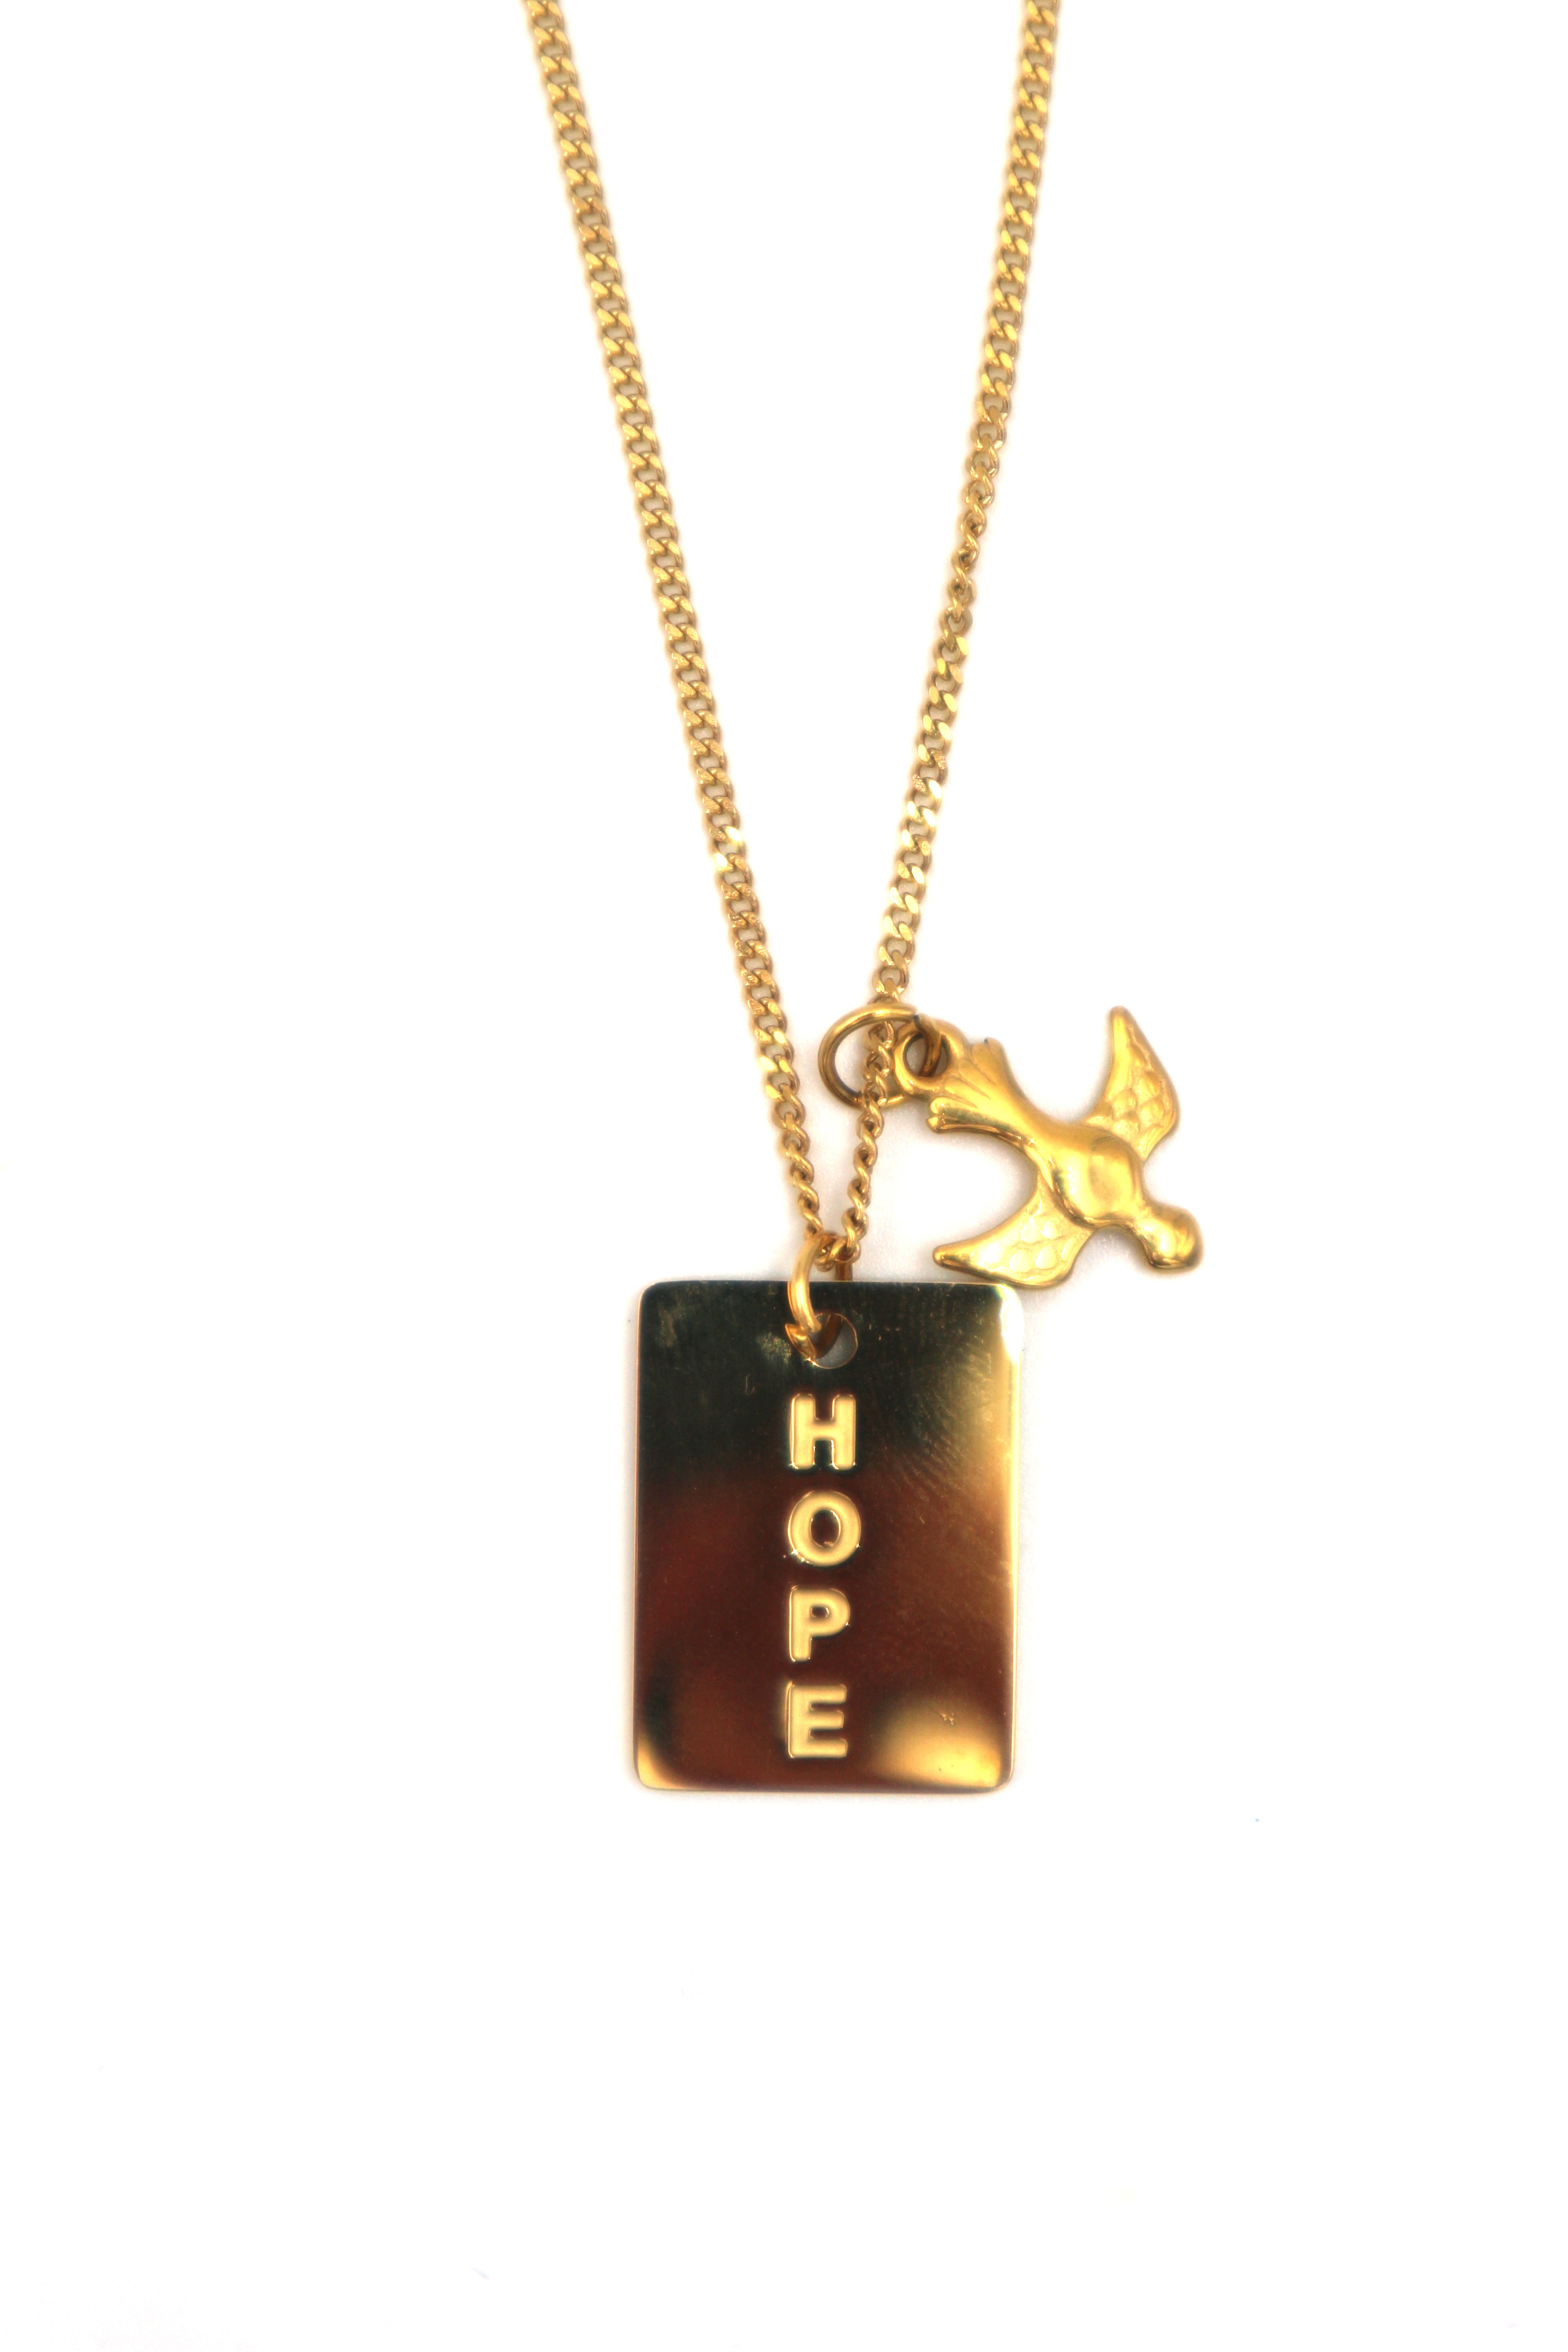 HOPE // El medallón de doble cara HOPE